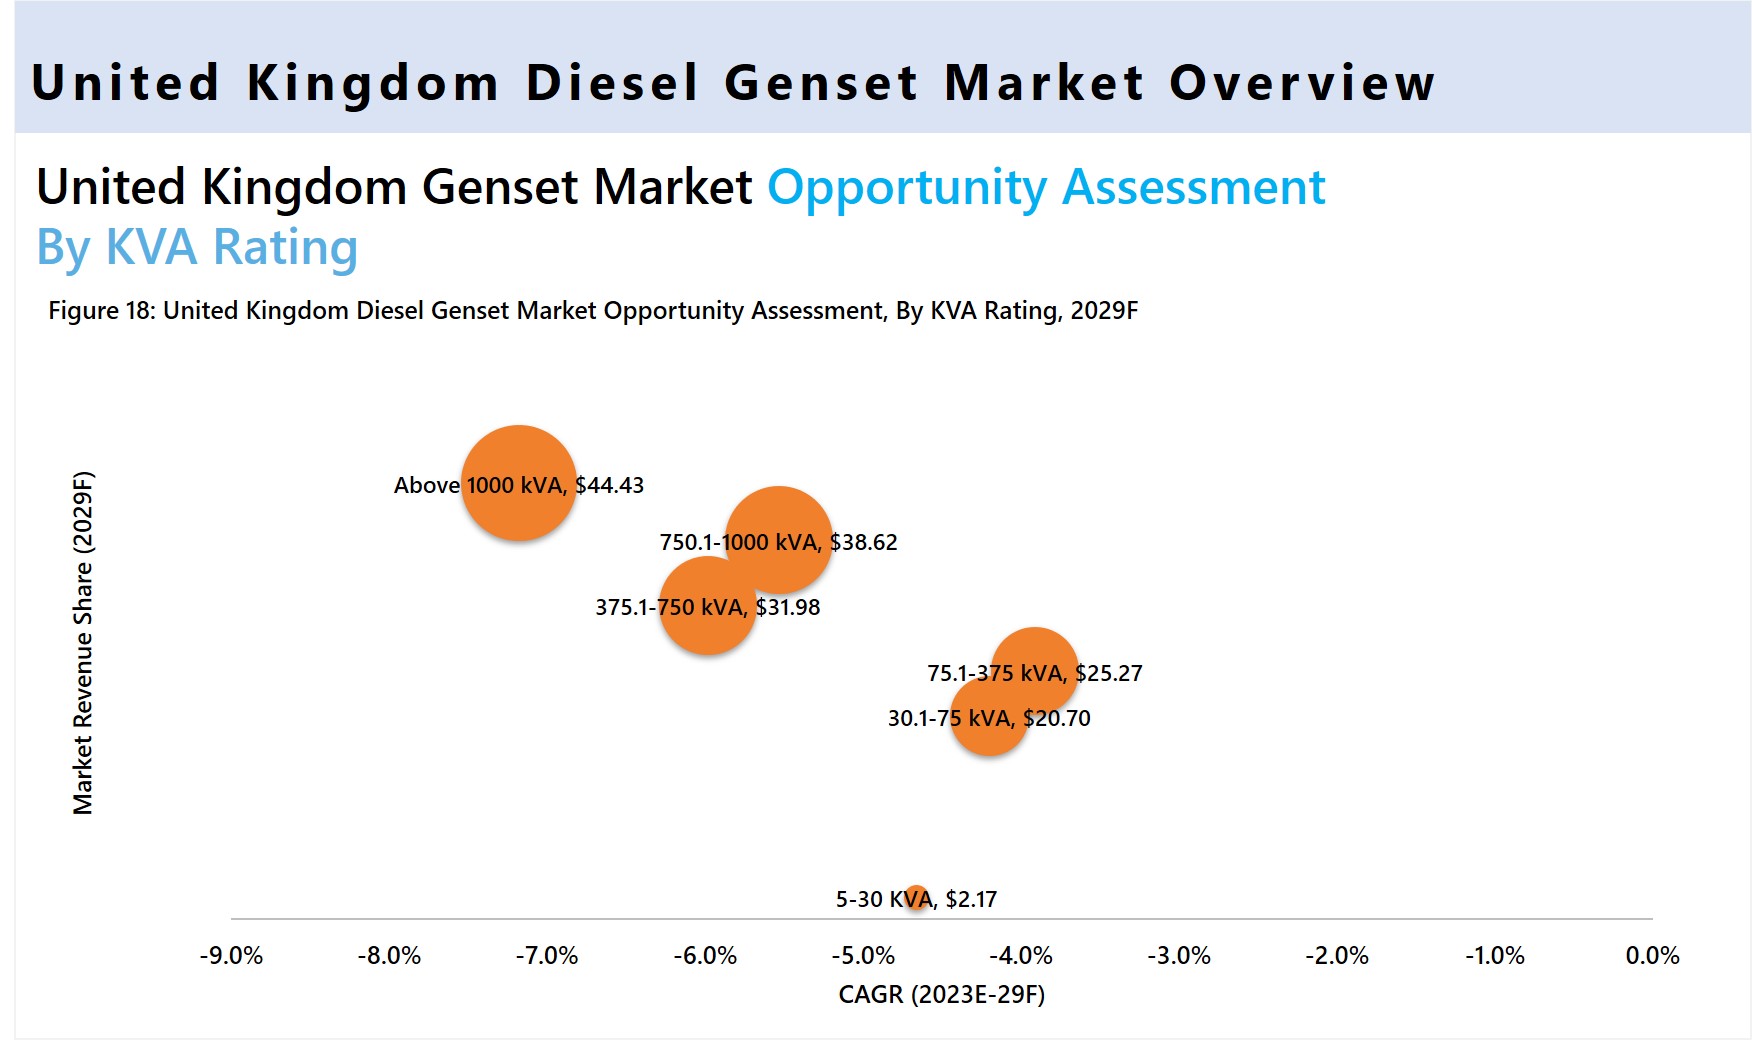 Global Diesel Genset Market